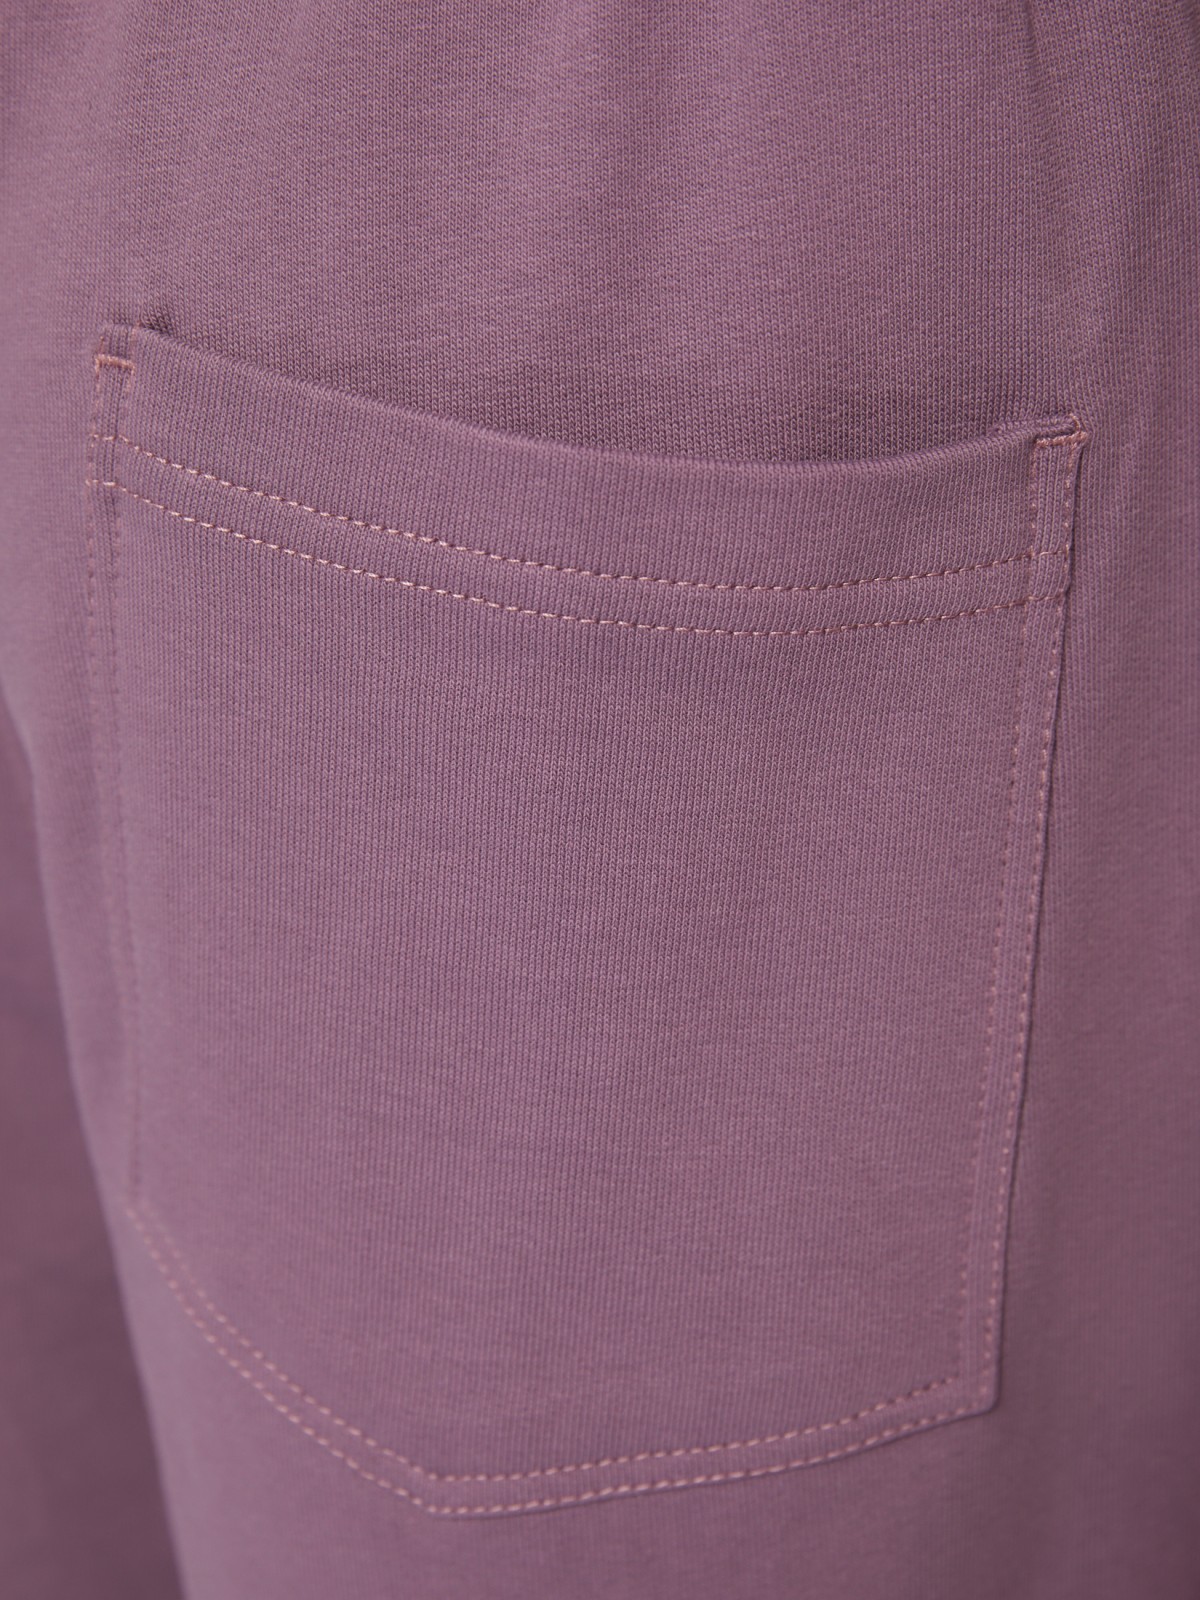 Трикотажные шорты из хлопка на резинке zolla 014237J2Q052, цвет фиолетовый, размер S - фото 5